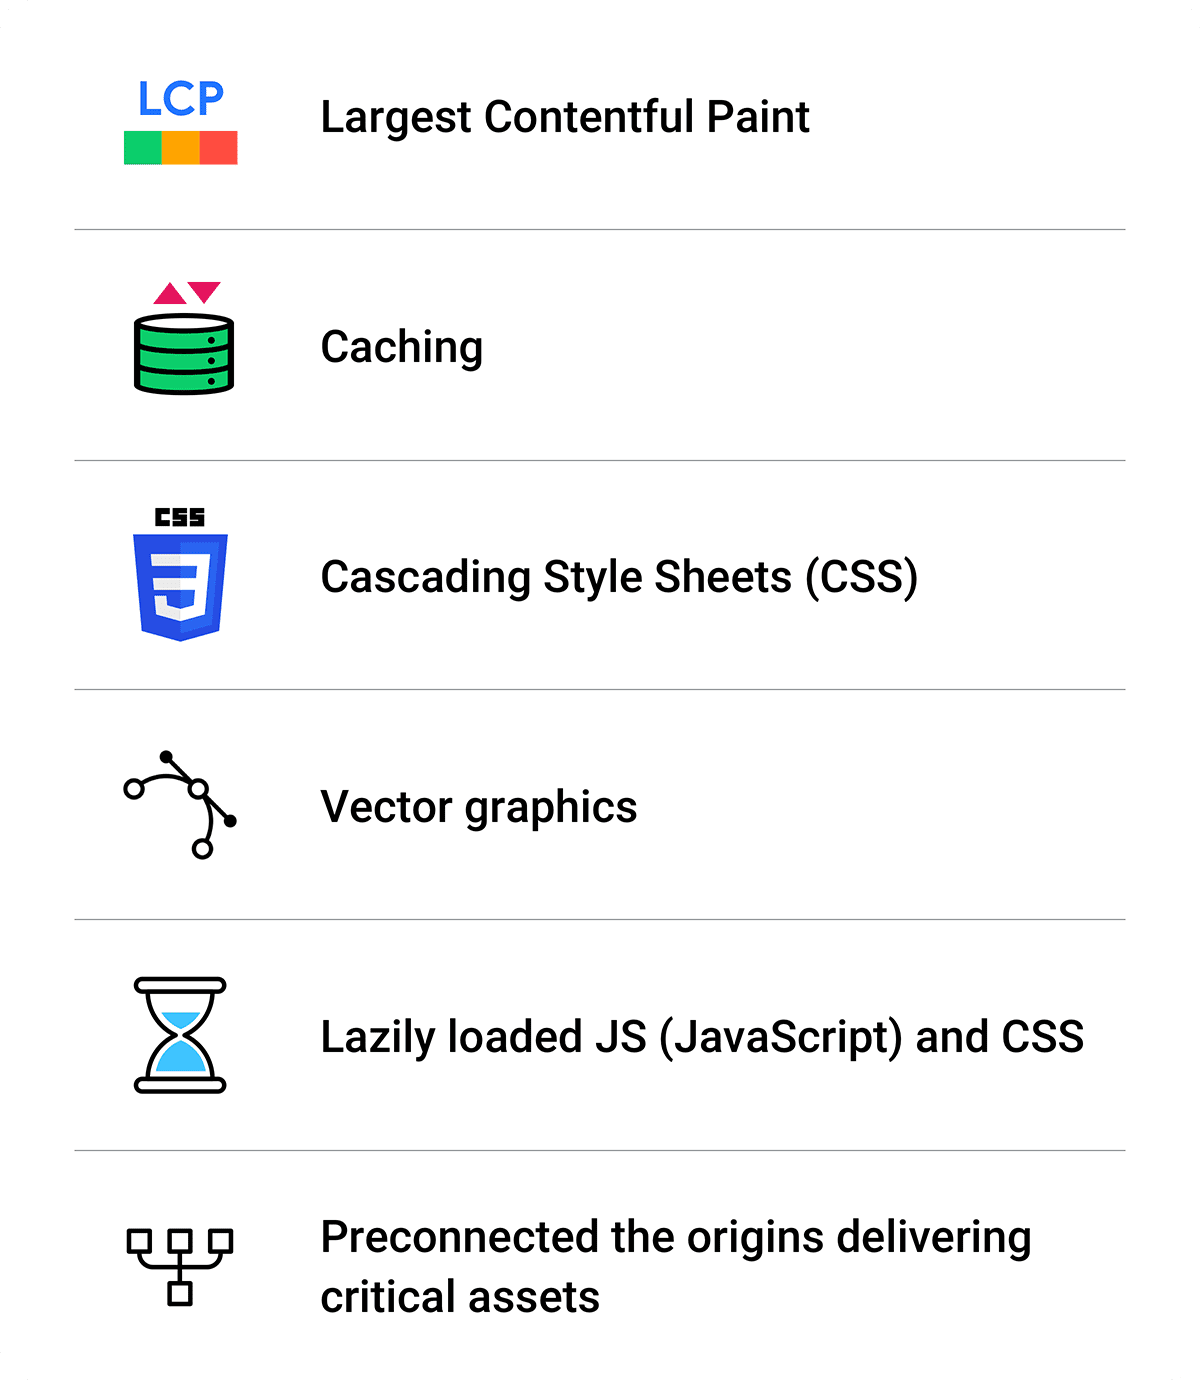 Résumé des optimisations: Largest Contentful Paint, mise en cache, CSS, graphiques vectoriels, fichiers JS et CSS à chargement différé, préconnexion.